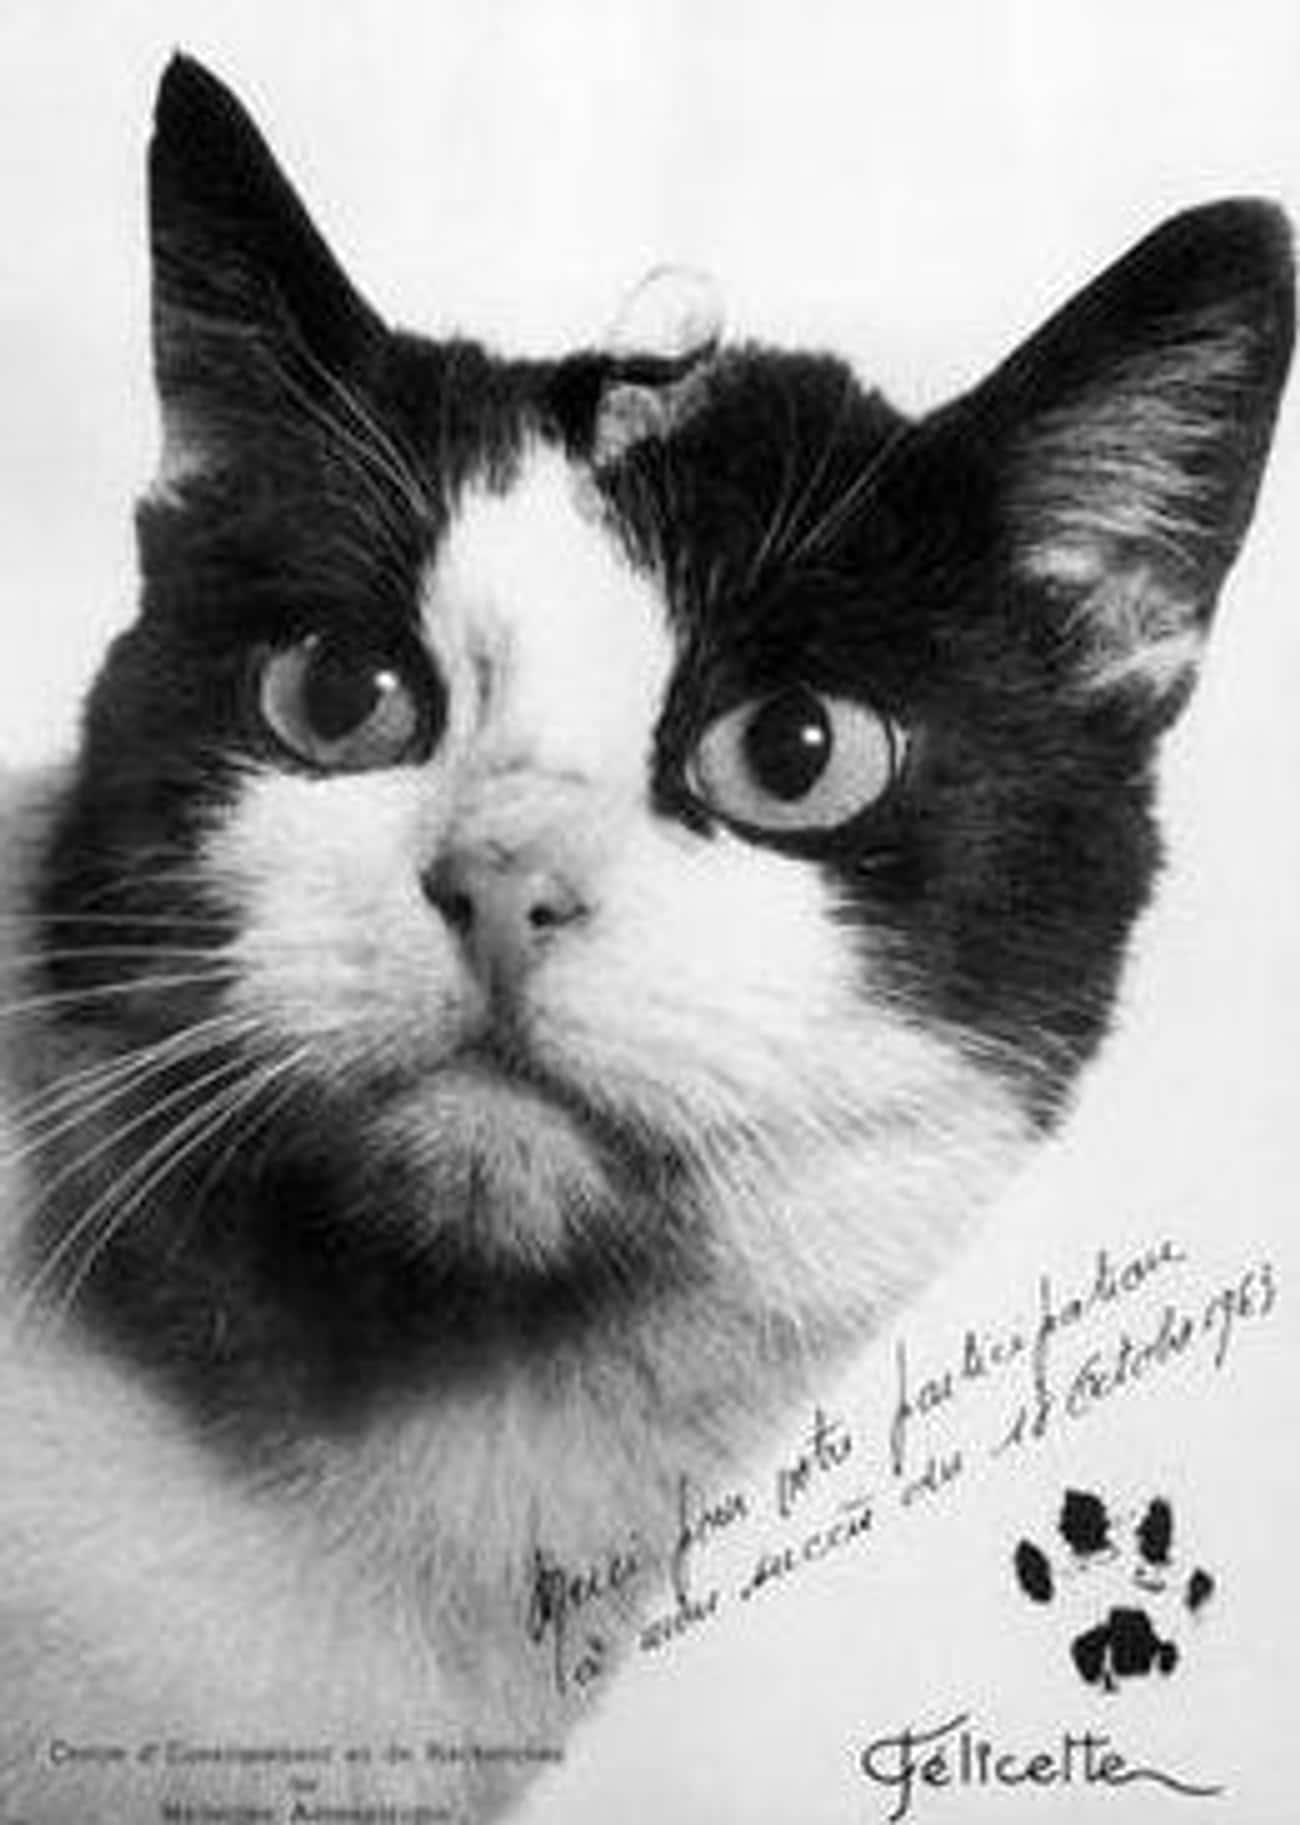 Кошка полетевшая в космос. Фелисетта. 18 Октября 1963 года Франция кошка Фелисетт. Кошка Фелисетт. Кот космонавт Фелисетт.